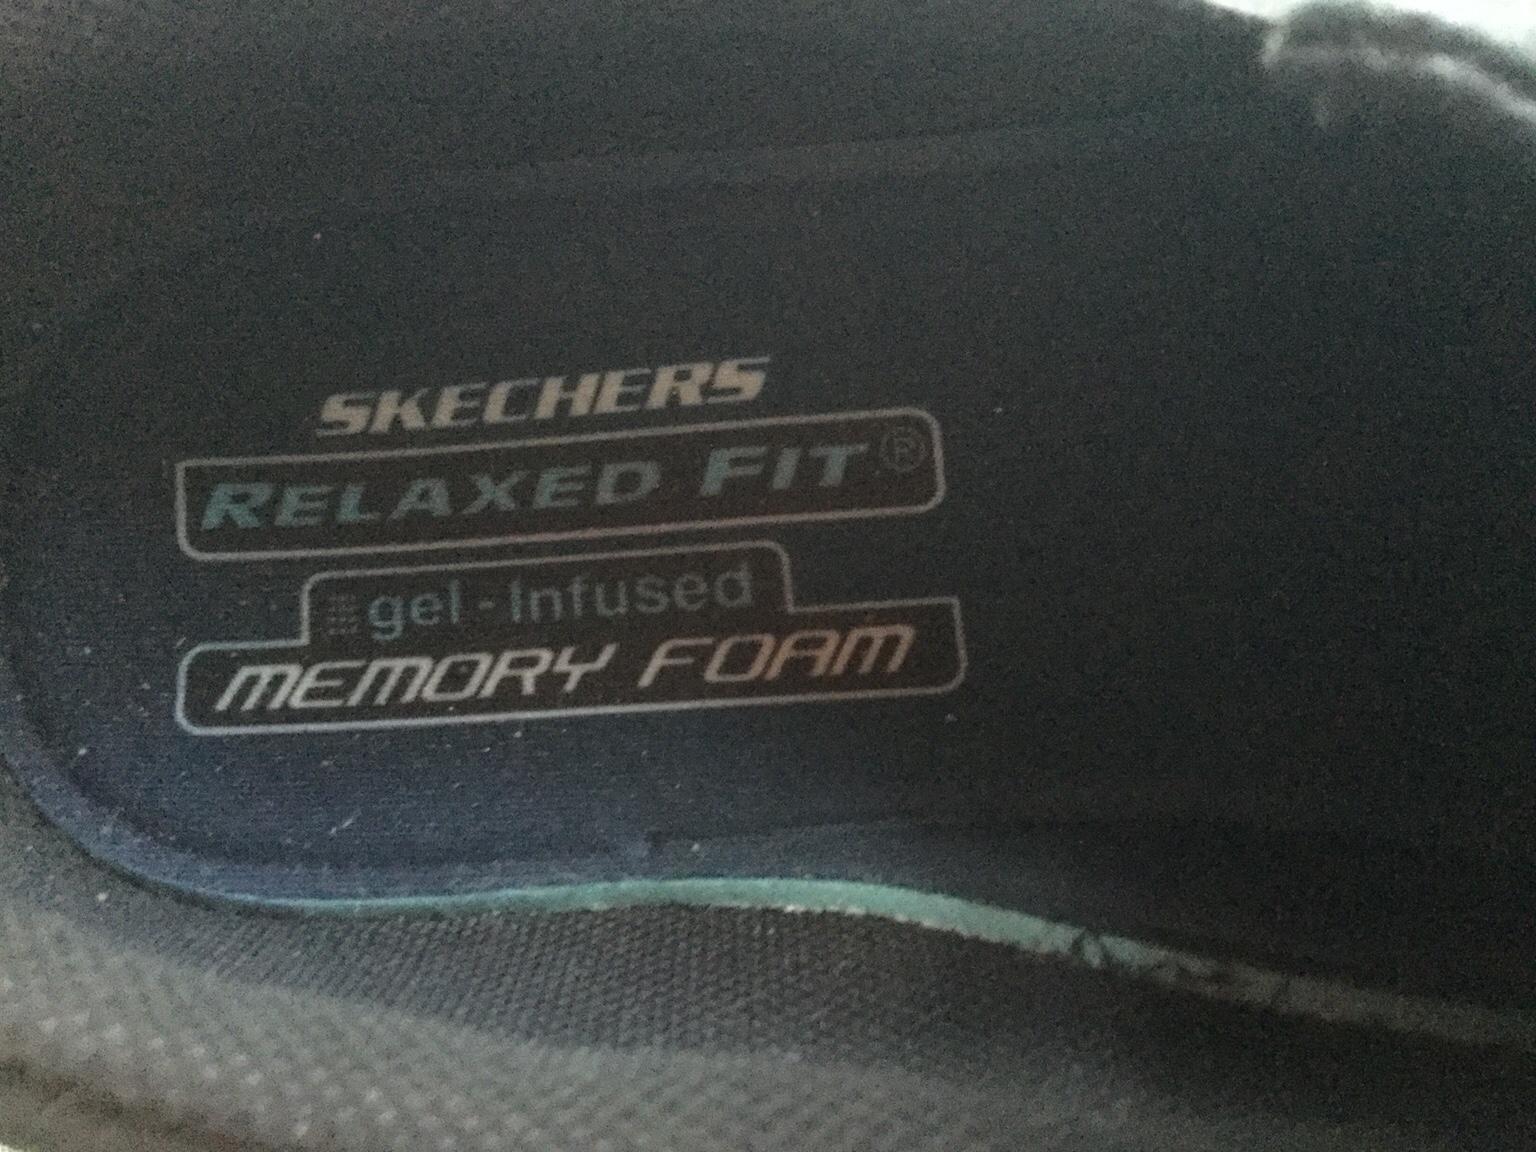 skechers relaxed fit gel infused memory foam mens